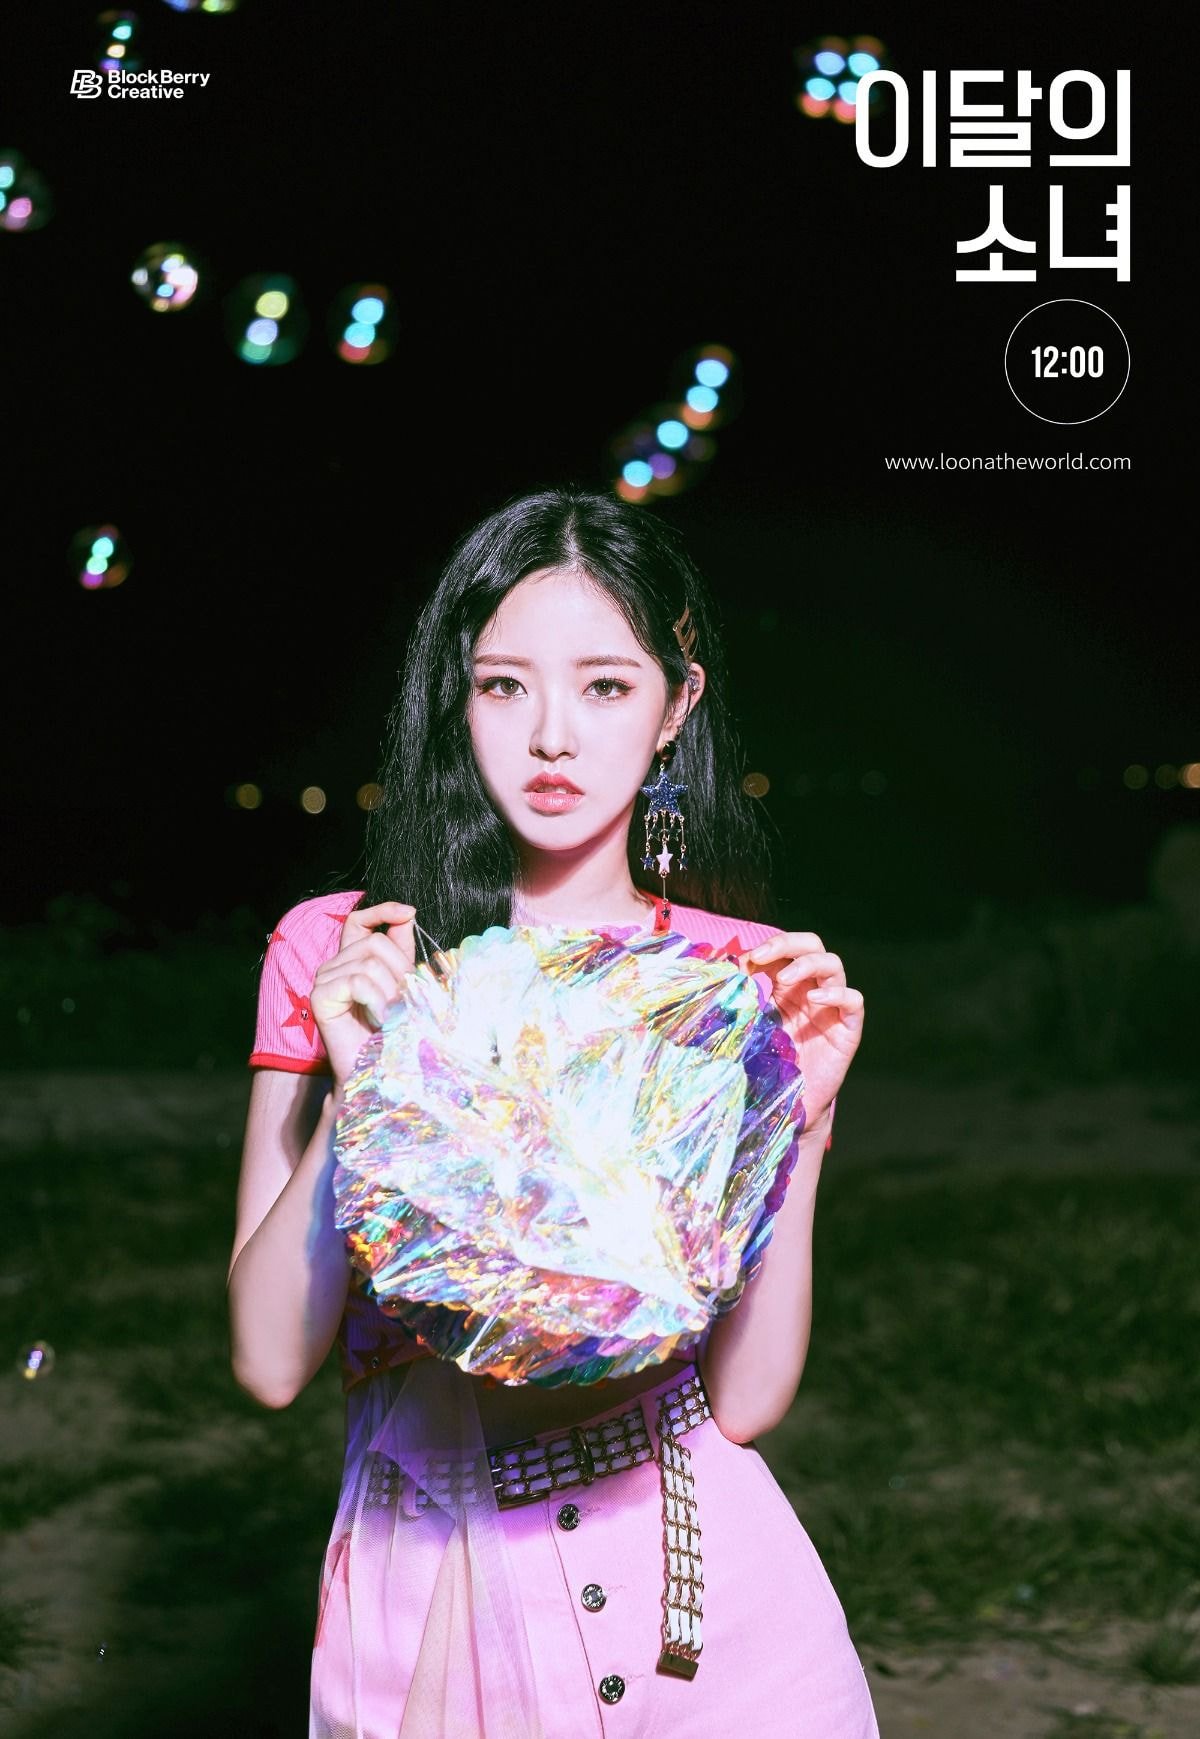 이달의 소녀 (LOONA) [12:00] 3rd Concept Photo 고원, 희진, 올리비아혜